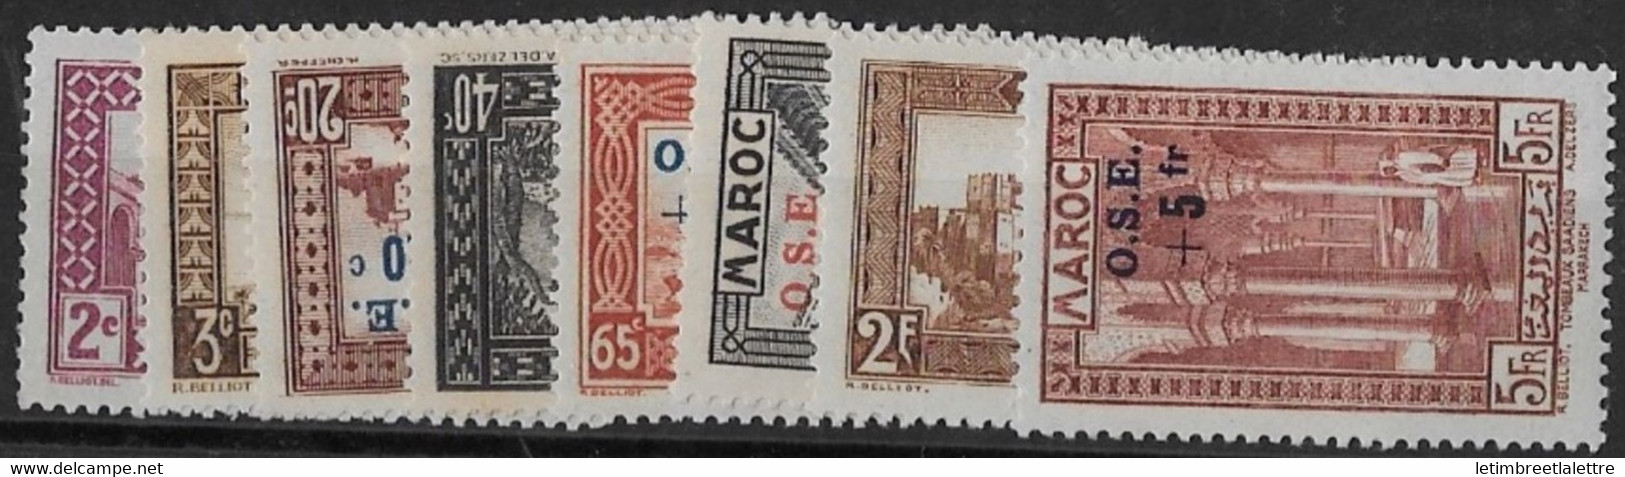 ⭐ Maroc - YT N° 153 à 160 ** - Neuf Sans Charnière - 1938 ⭐ - Unused Stamps